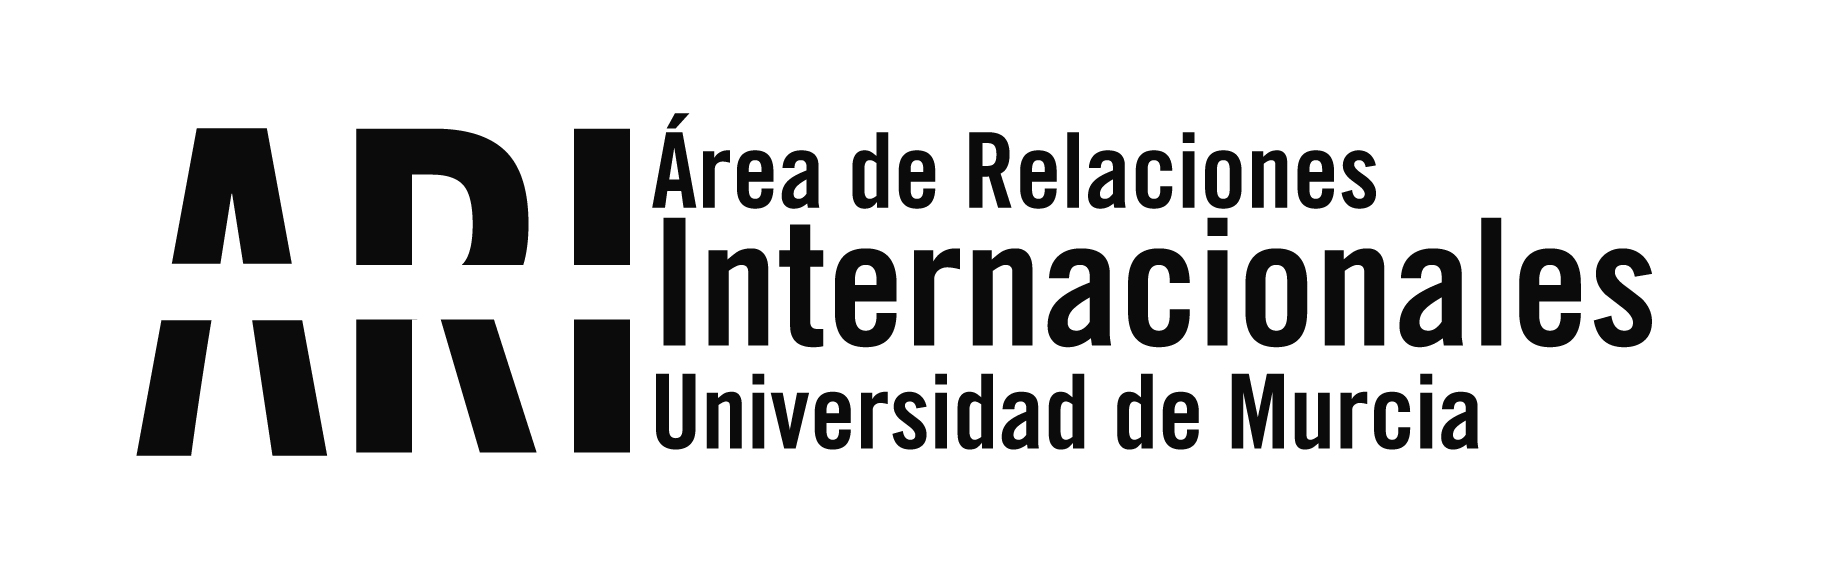 II Seminario del proyecto Erasmus+ LIMEDIAT en Braga (Portugal) sobre la formación de Mediadores y la calidad de la mediación en el contexto europeo - Área de Relaciones Internacionales